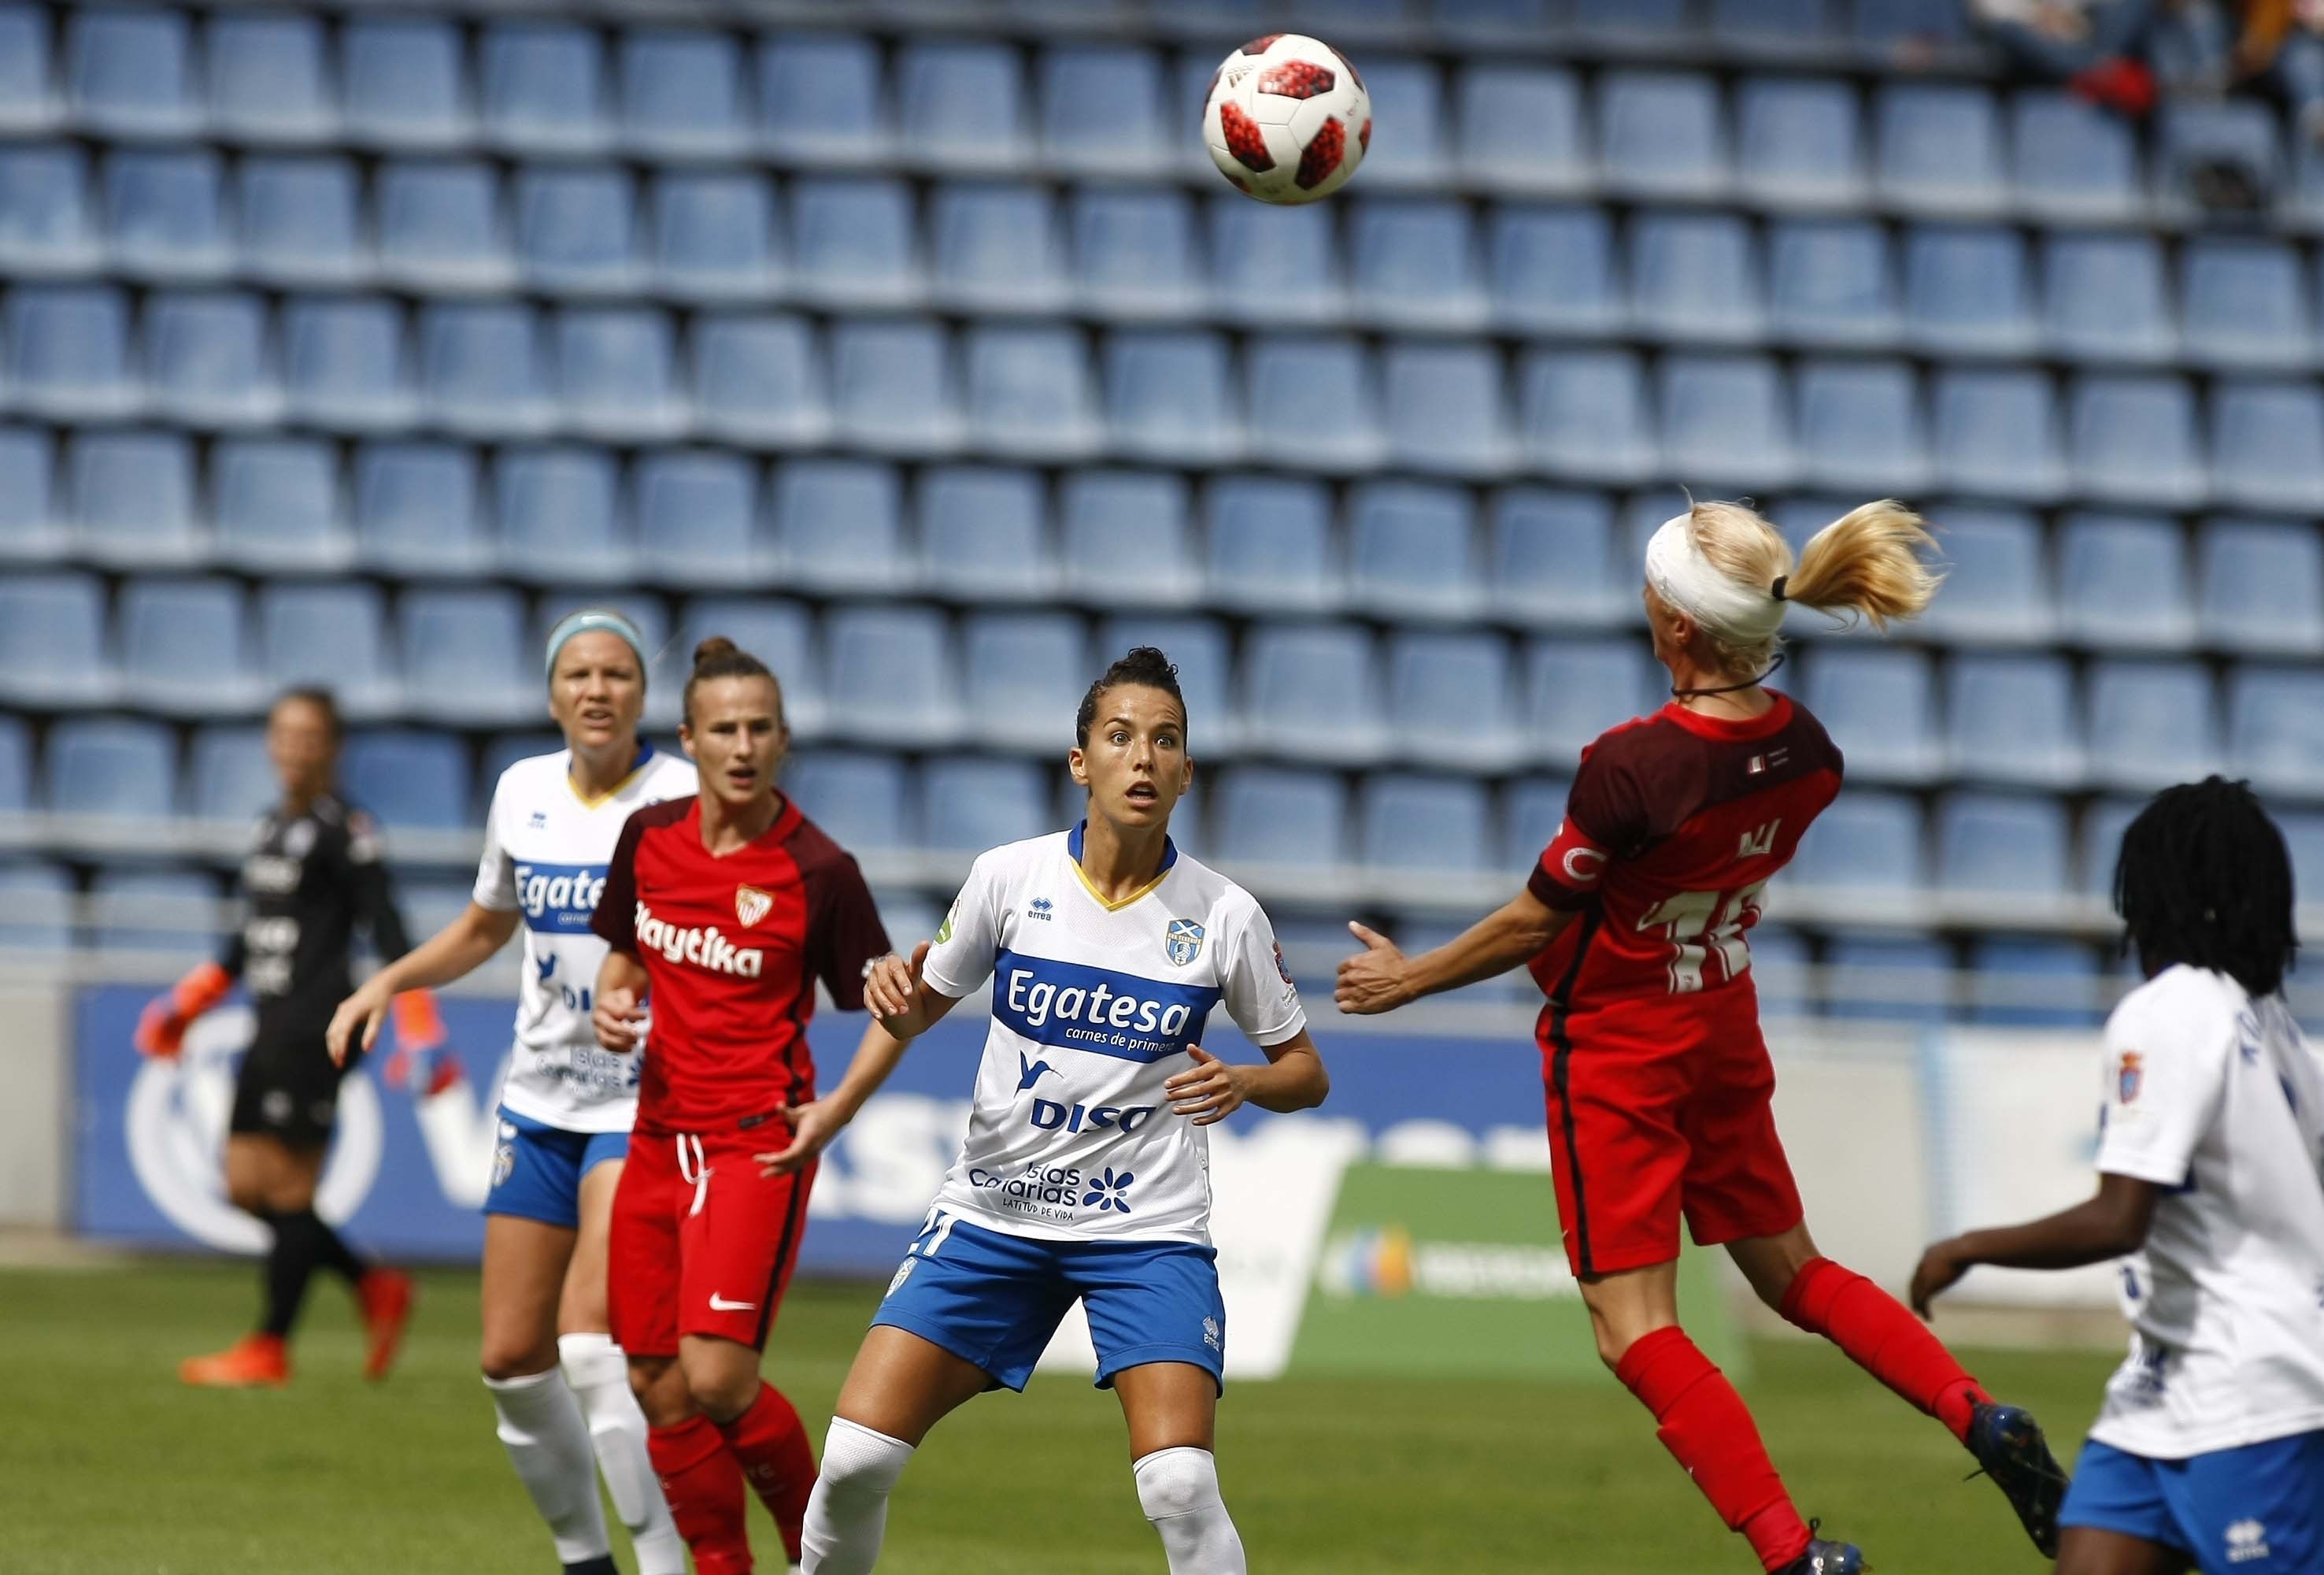 Alicia Fuentes, capitana del primer equipo femenino del Sevilla FC, trata de cabecear el balón durante el partido de la jornada 8 de la Liga Iberdrola ante la UDG Tenerife